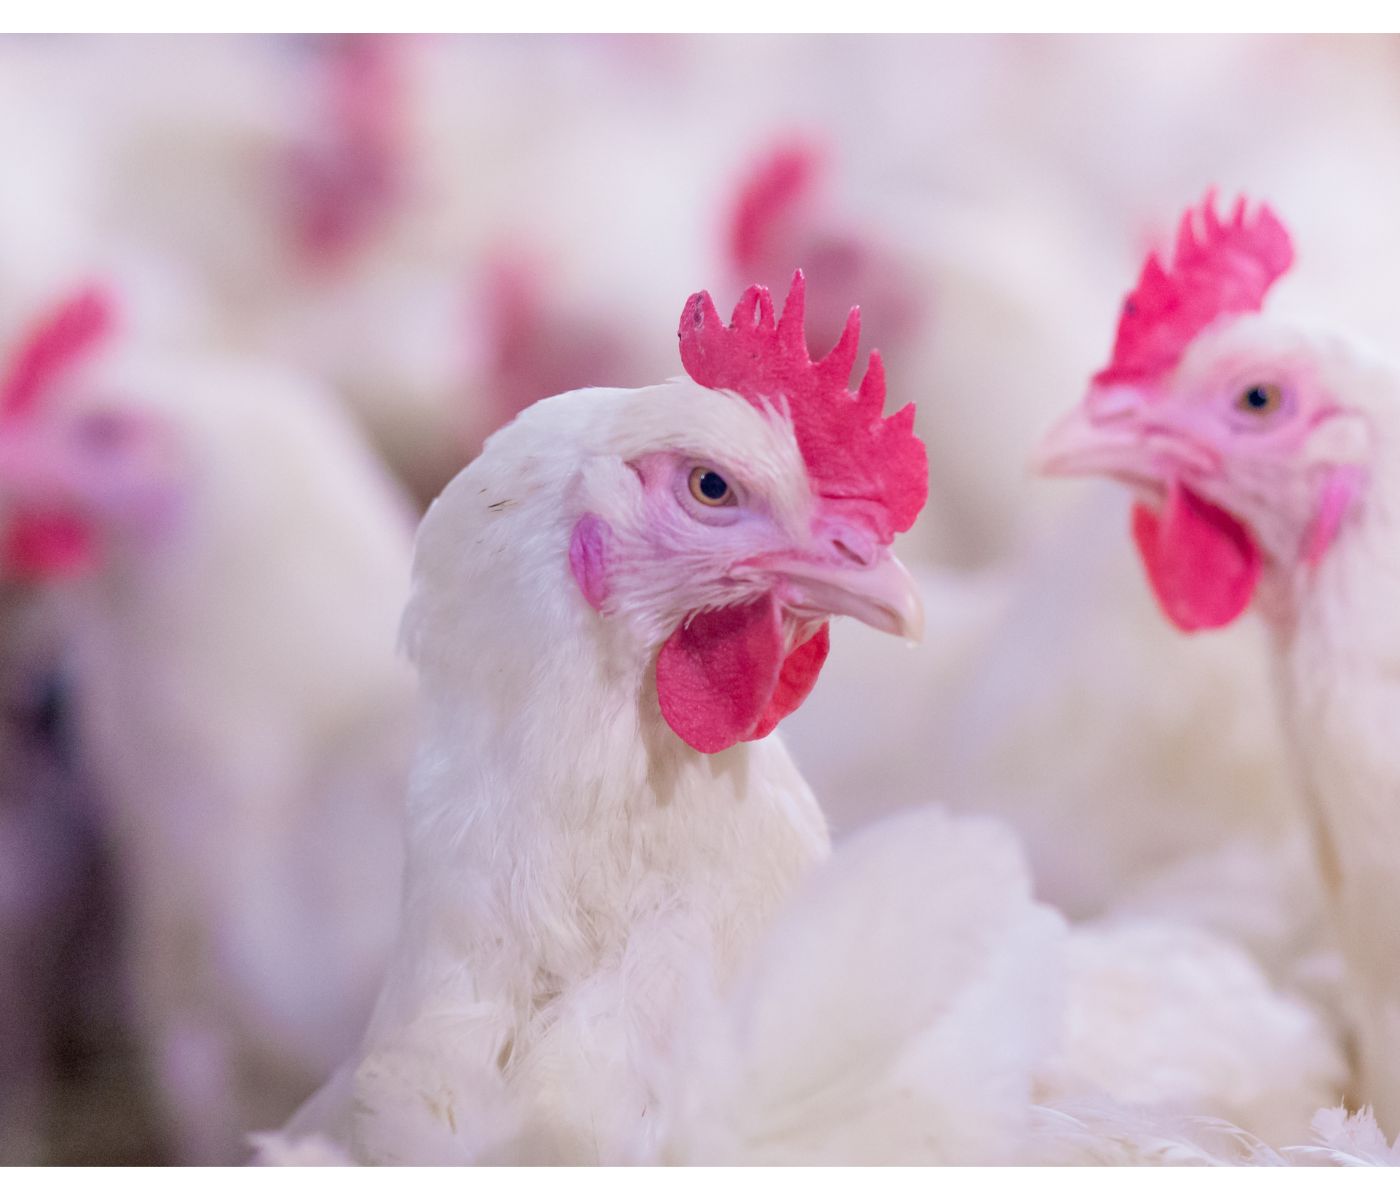 Chile registra Influenza Aviar en un plantel comercial: Se procede a suspender exportaciones avícolas